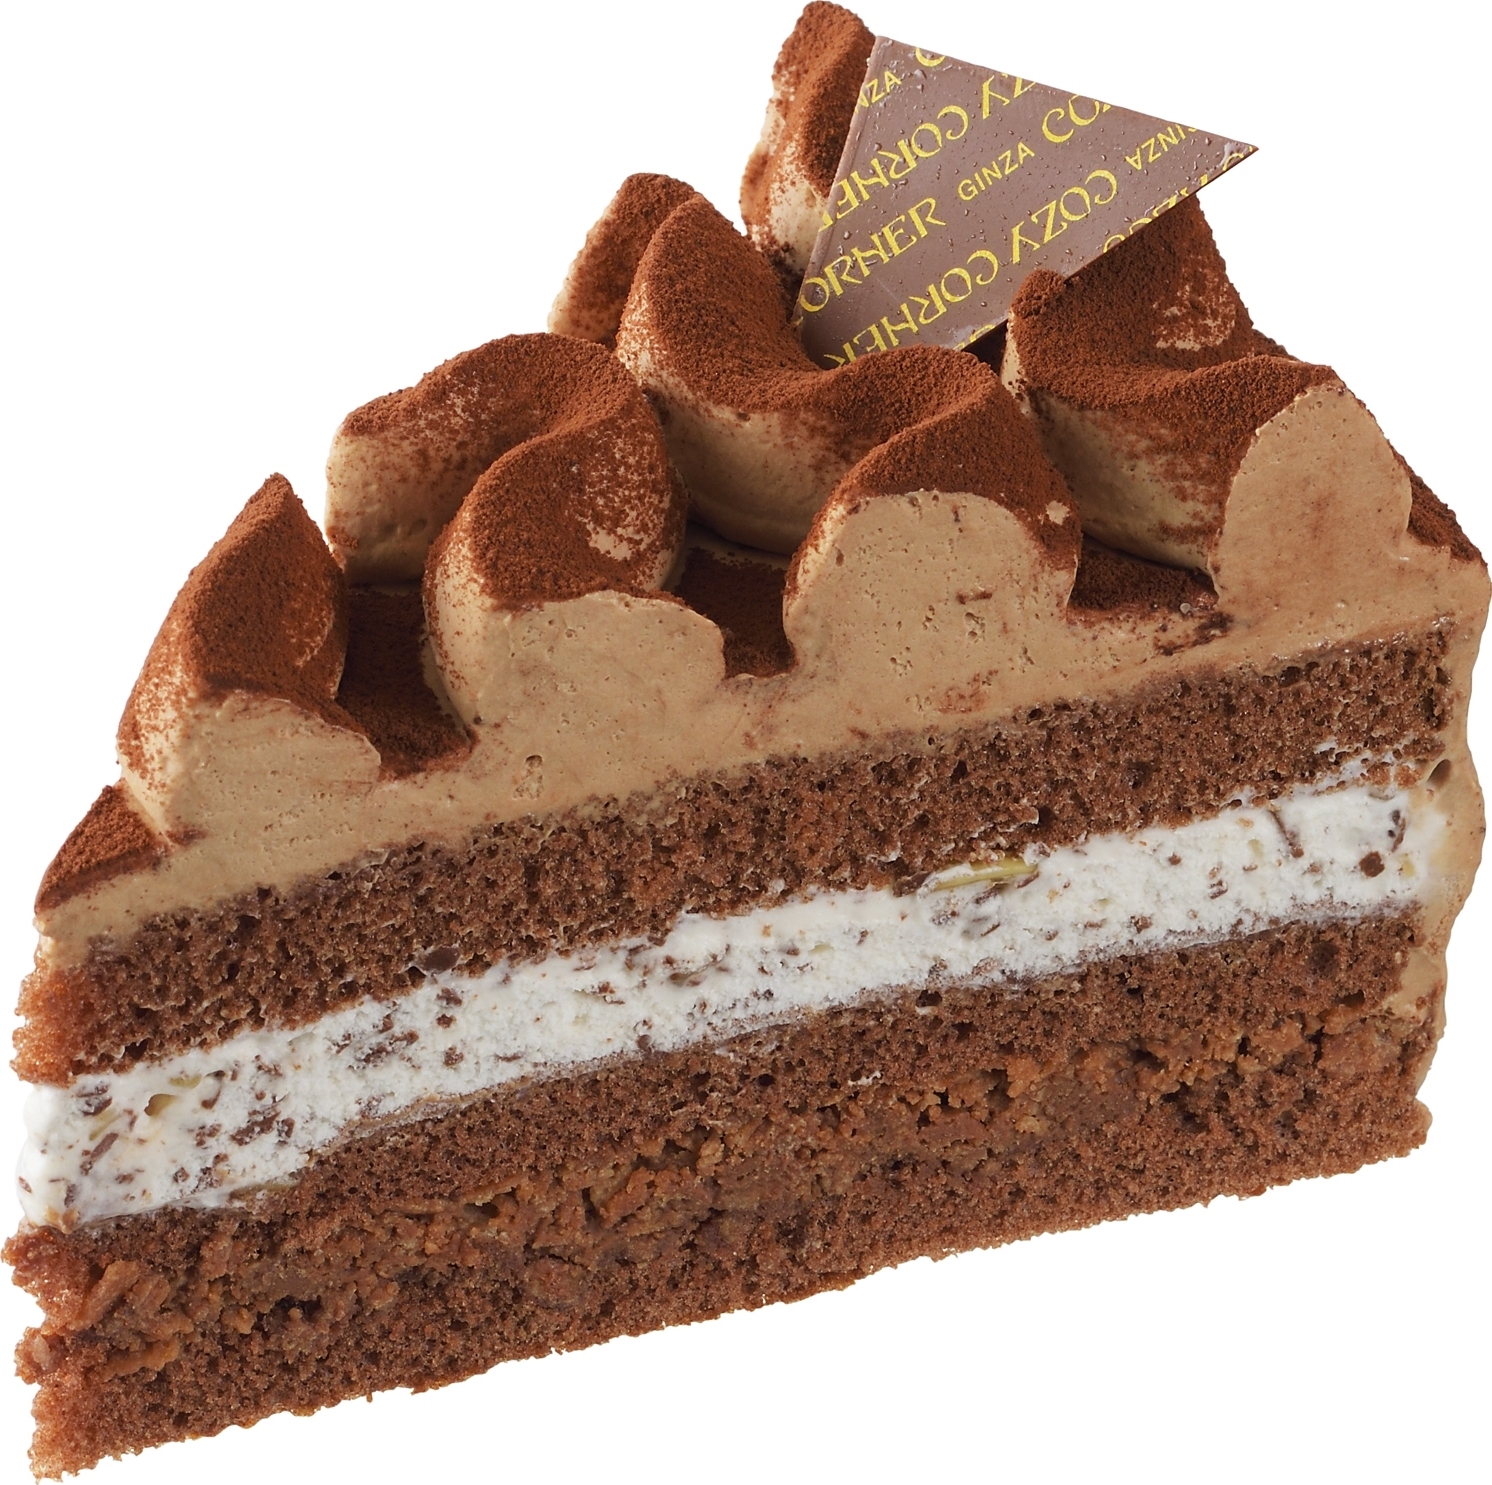 高評価 銀座コージーコーナー さくさく食感のチョコレートケーキの口コミ 評価 値段 価格情報 もぐナビ